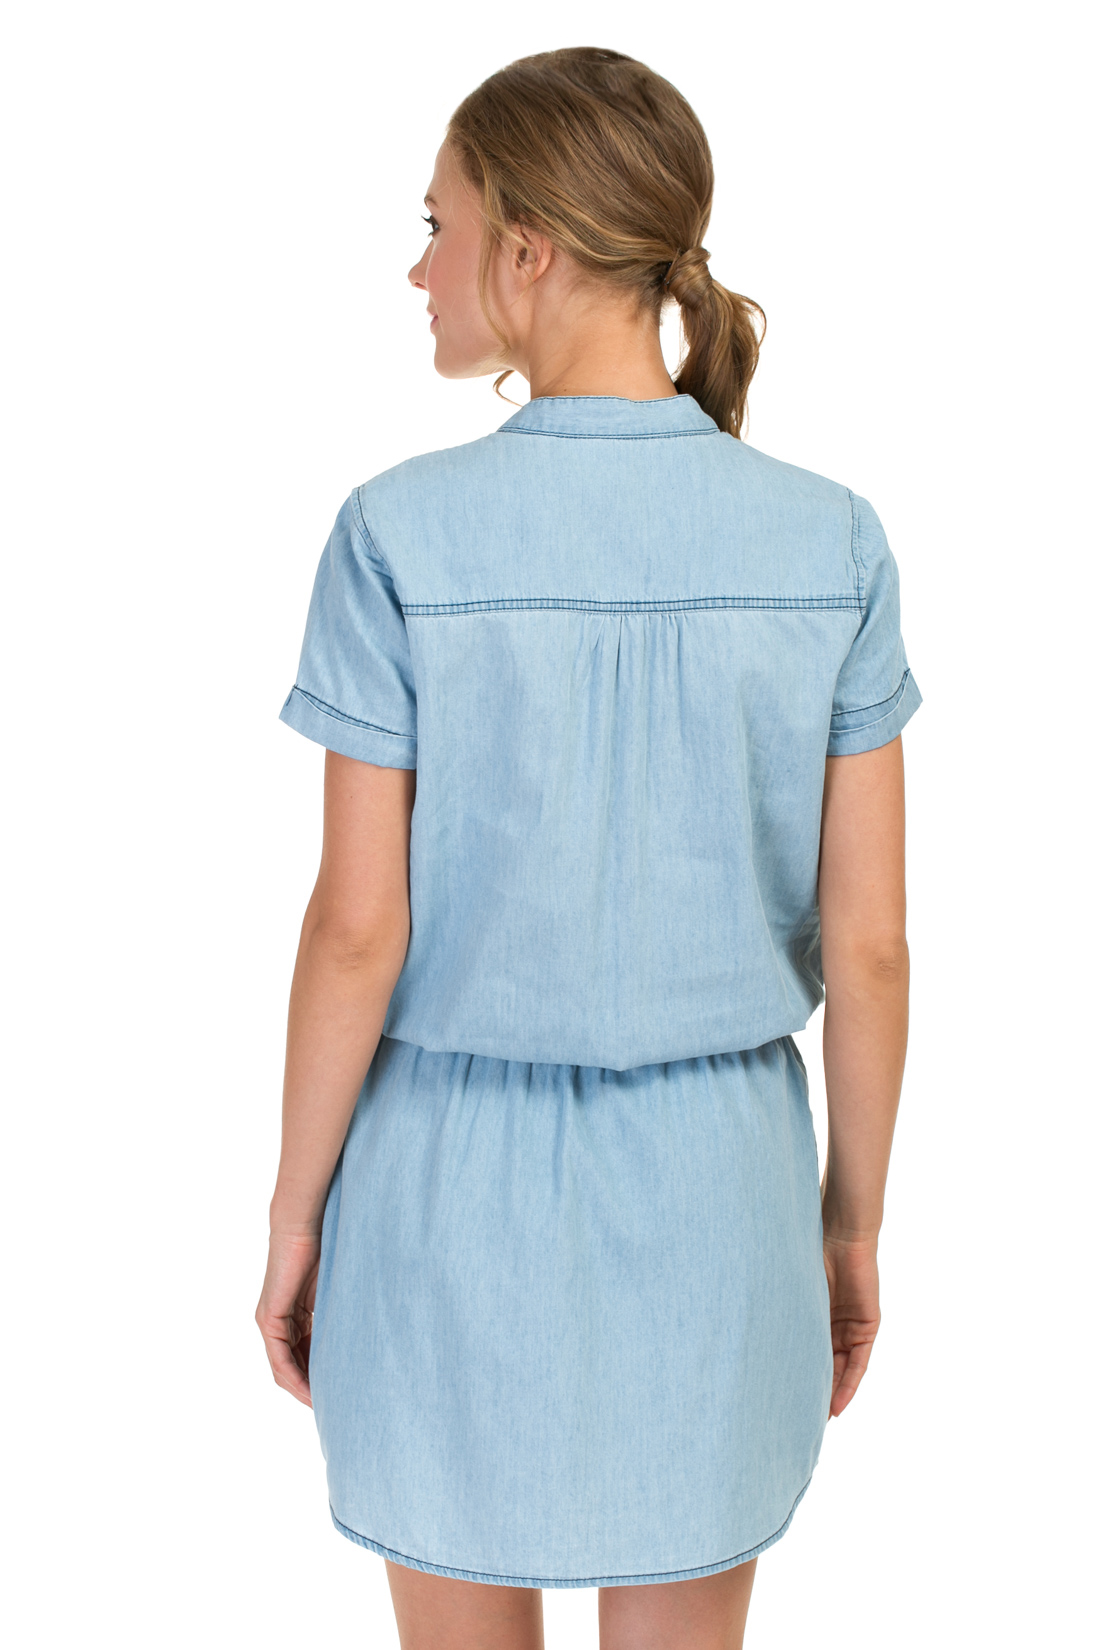 Платье-рубашка из денима (арт. baon B457087), размер XL, цвет light blue denim#голубой Платье-рубашка из денима (арт. baon B457087) - фото 2